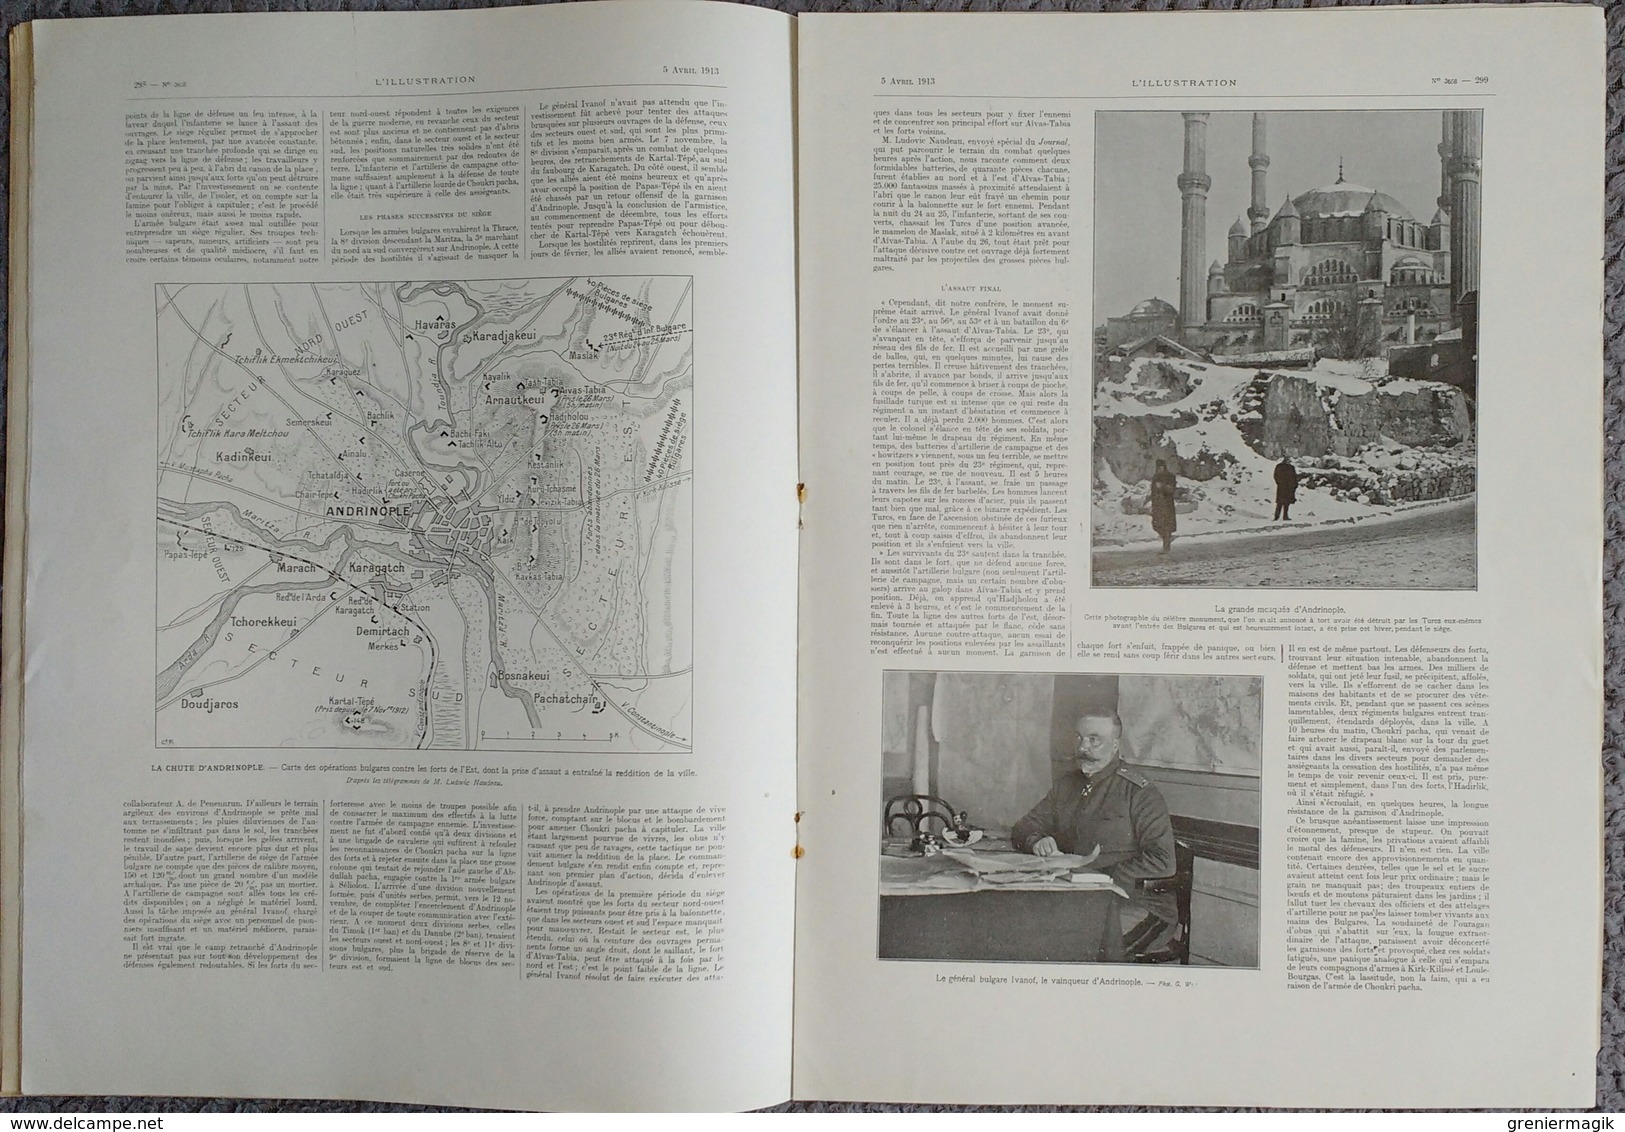 L'Illustration 3658 5 avril 1913 Andrinople/M. Poincaré à Montpellier/SEM/Janina/Grèce roi Georges/Maroc